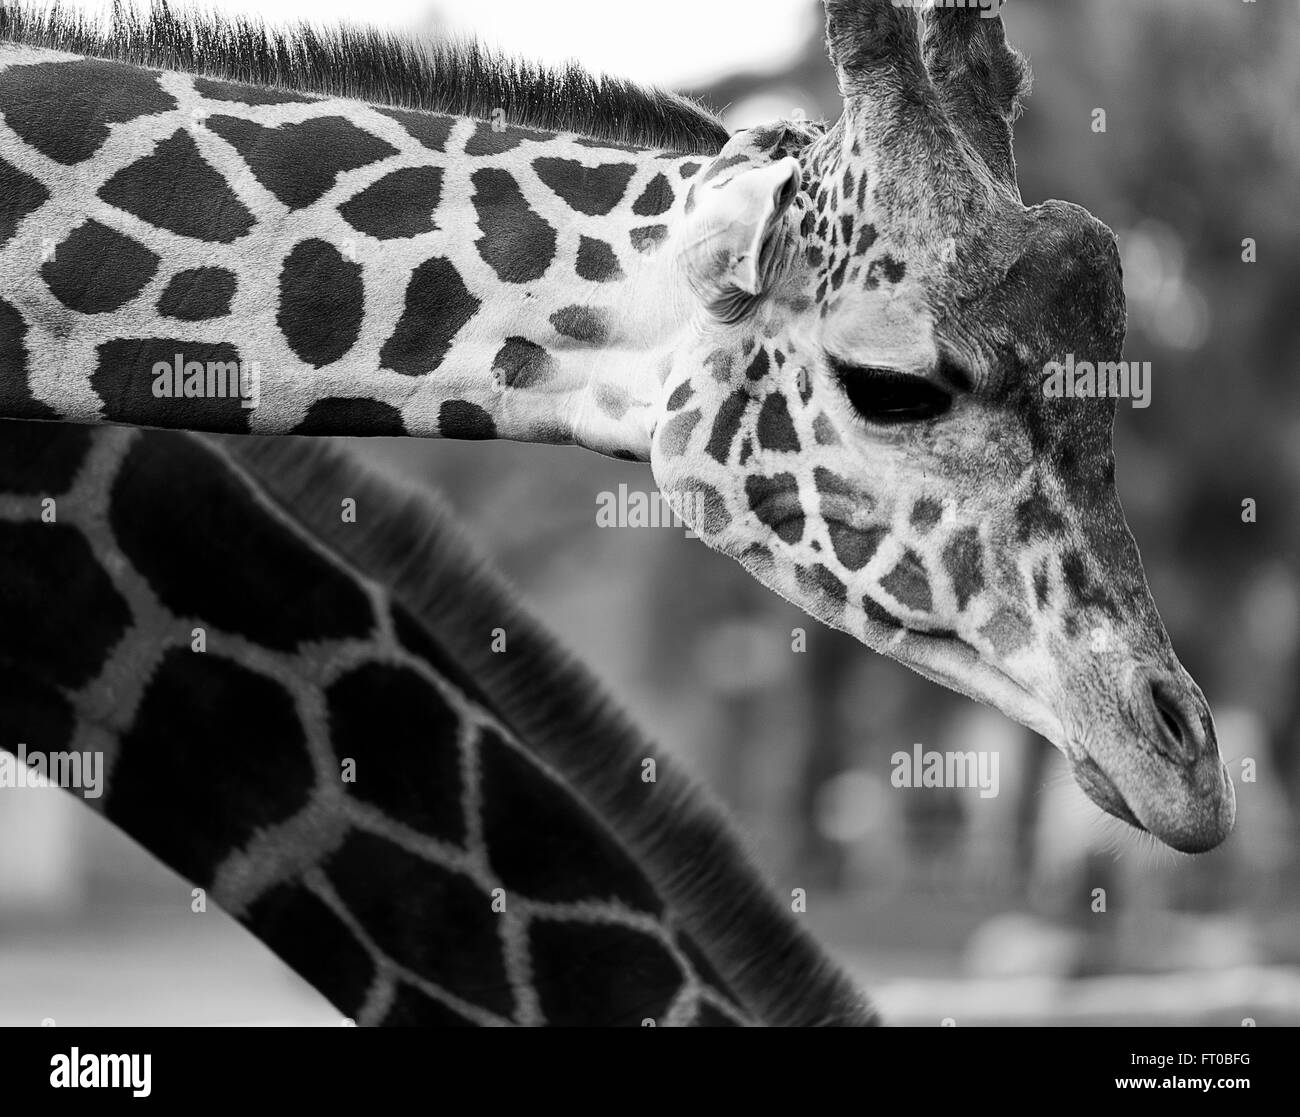 Black and white, giraffe Stock Photo